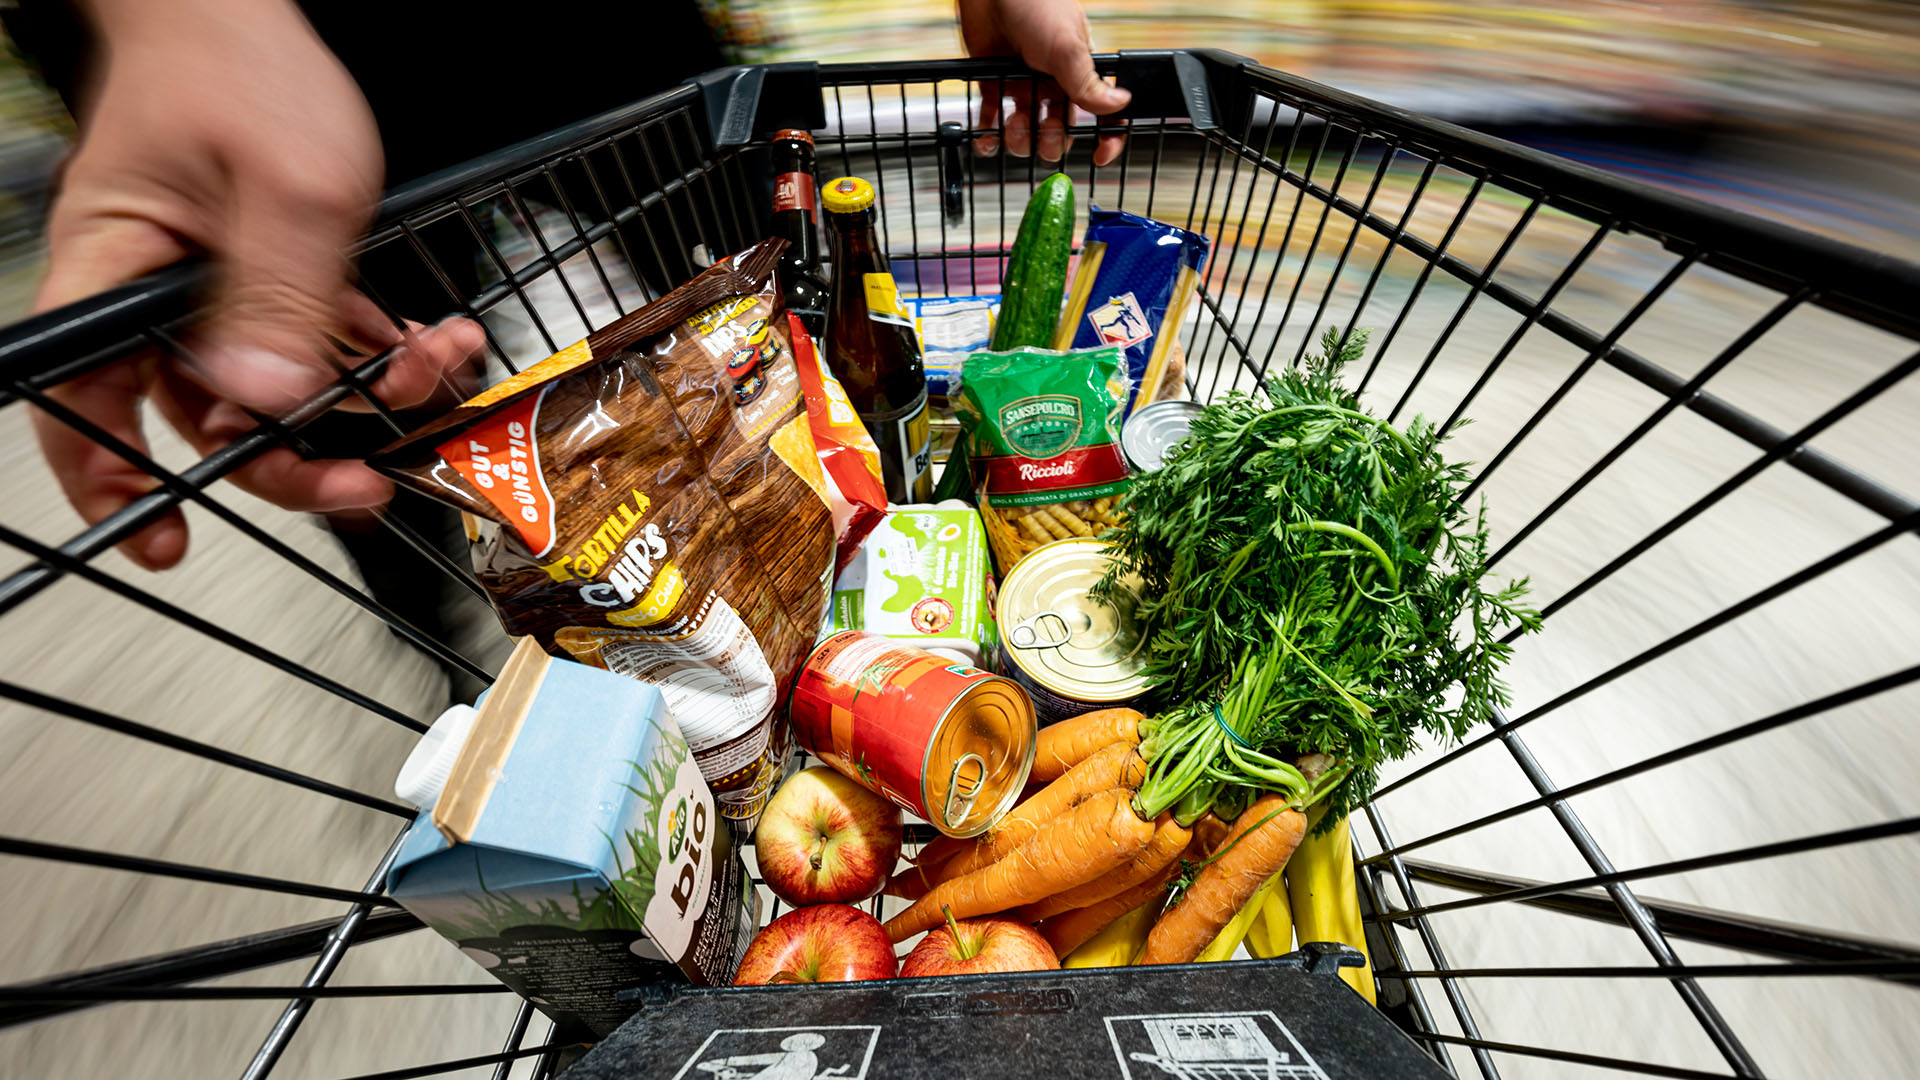 Lebensmittel liegen in einem Einkaufswagen.